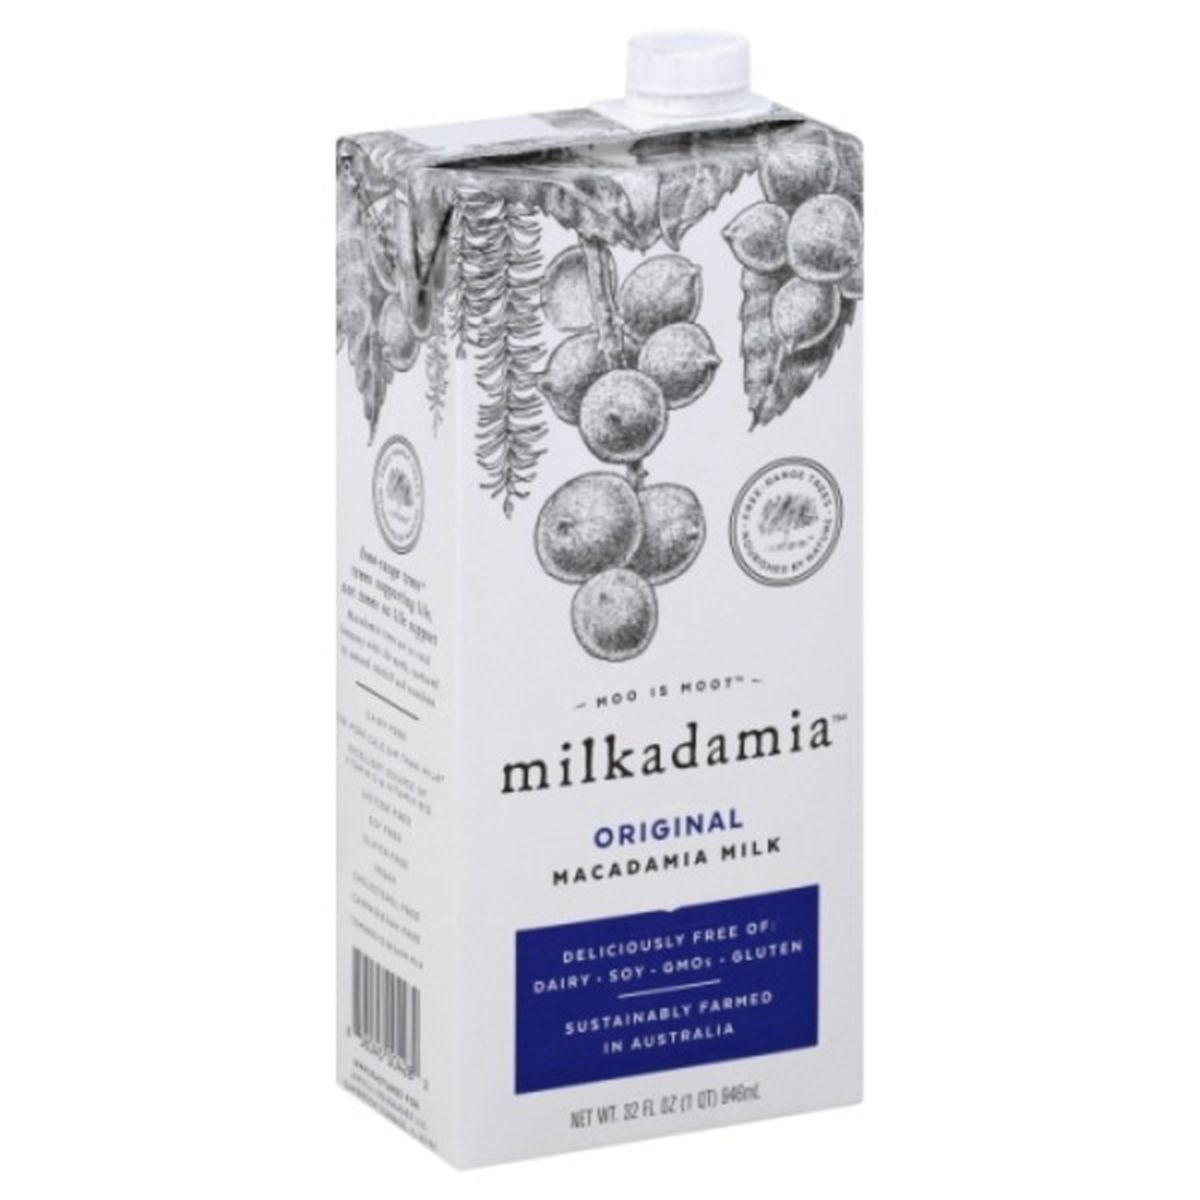 Calories in milkadamia Macadamia Milk, Original